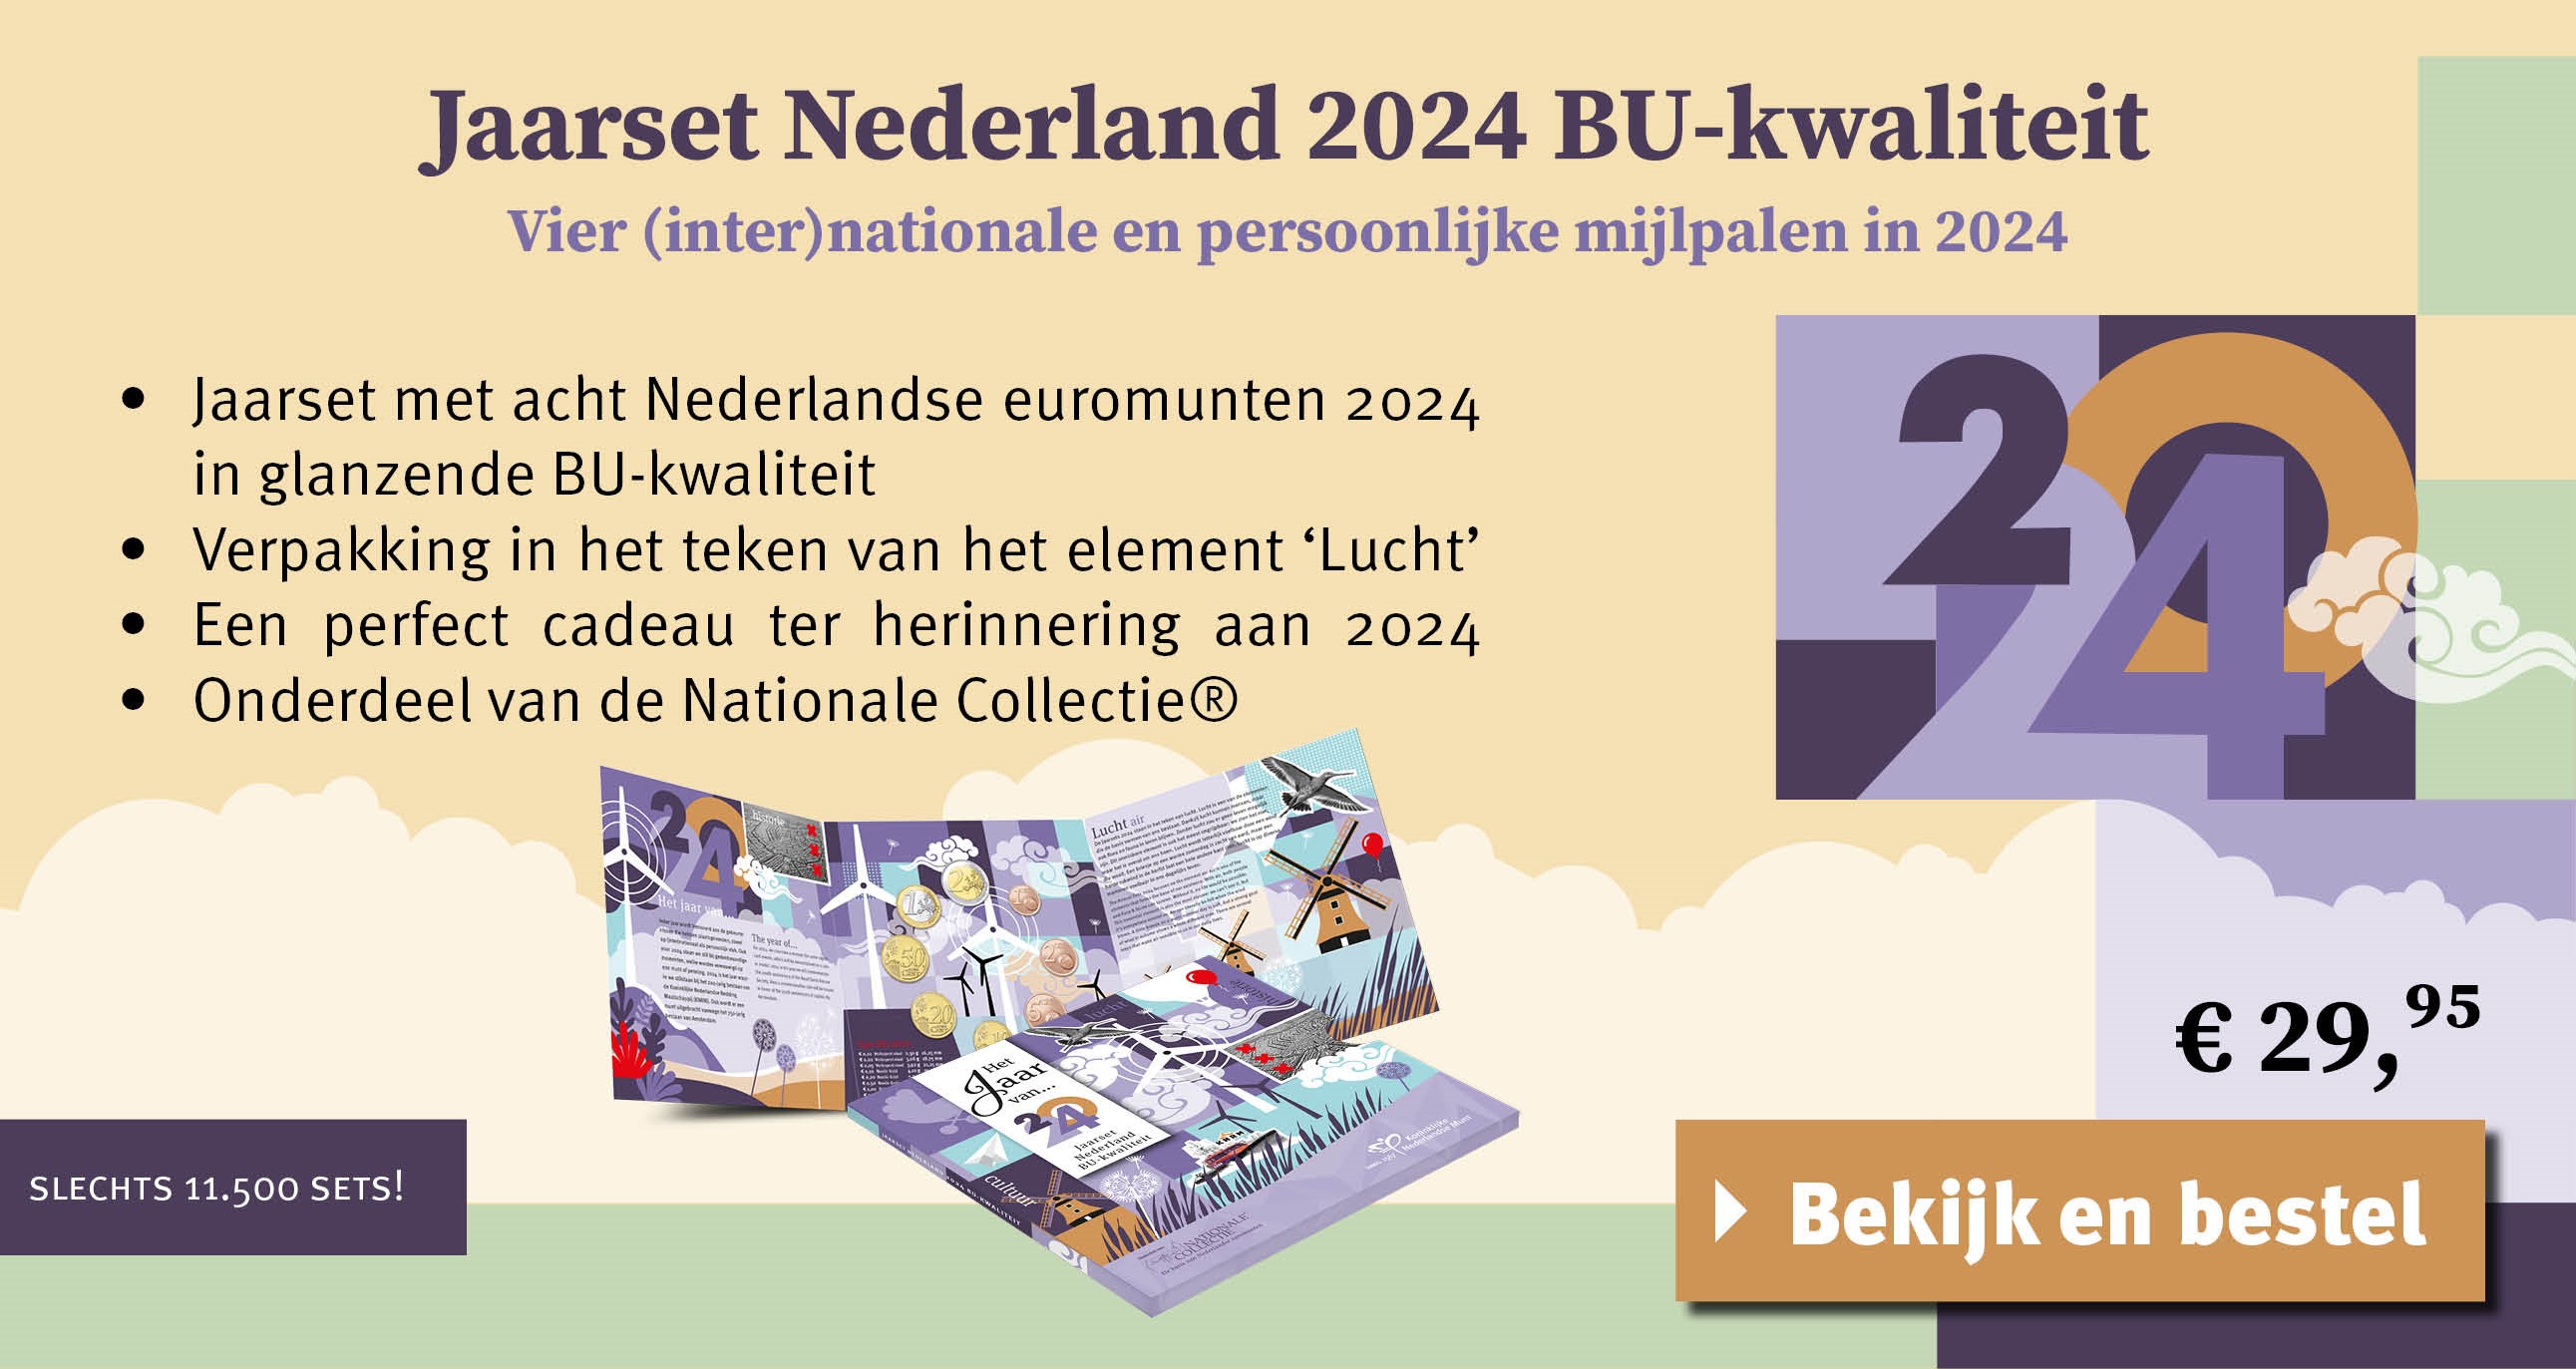 Bekijk en bestel: Jaarset Nederlands 2024 BU